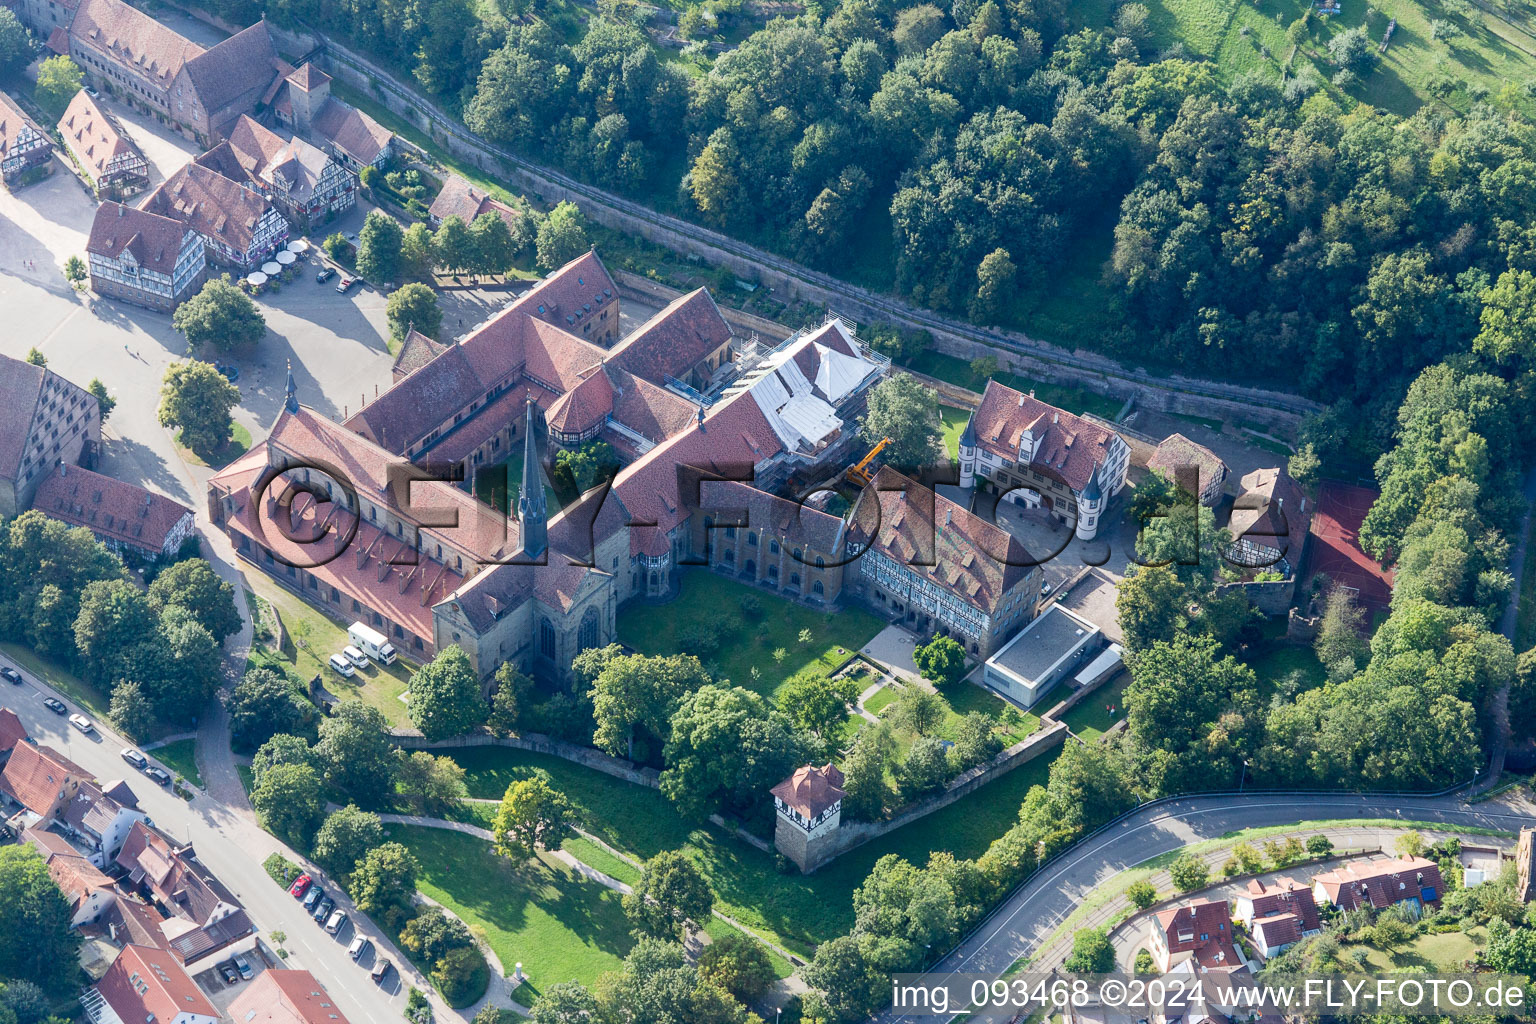 Vue aérienne de Complexe immobilier du monastère Maulbronn à Maulbronn dans le département Bade-Wurtemberg, Allemagne